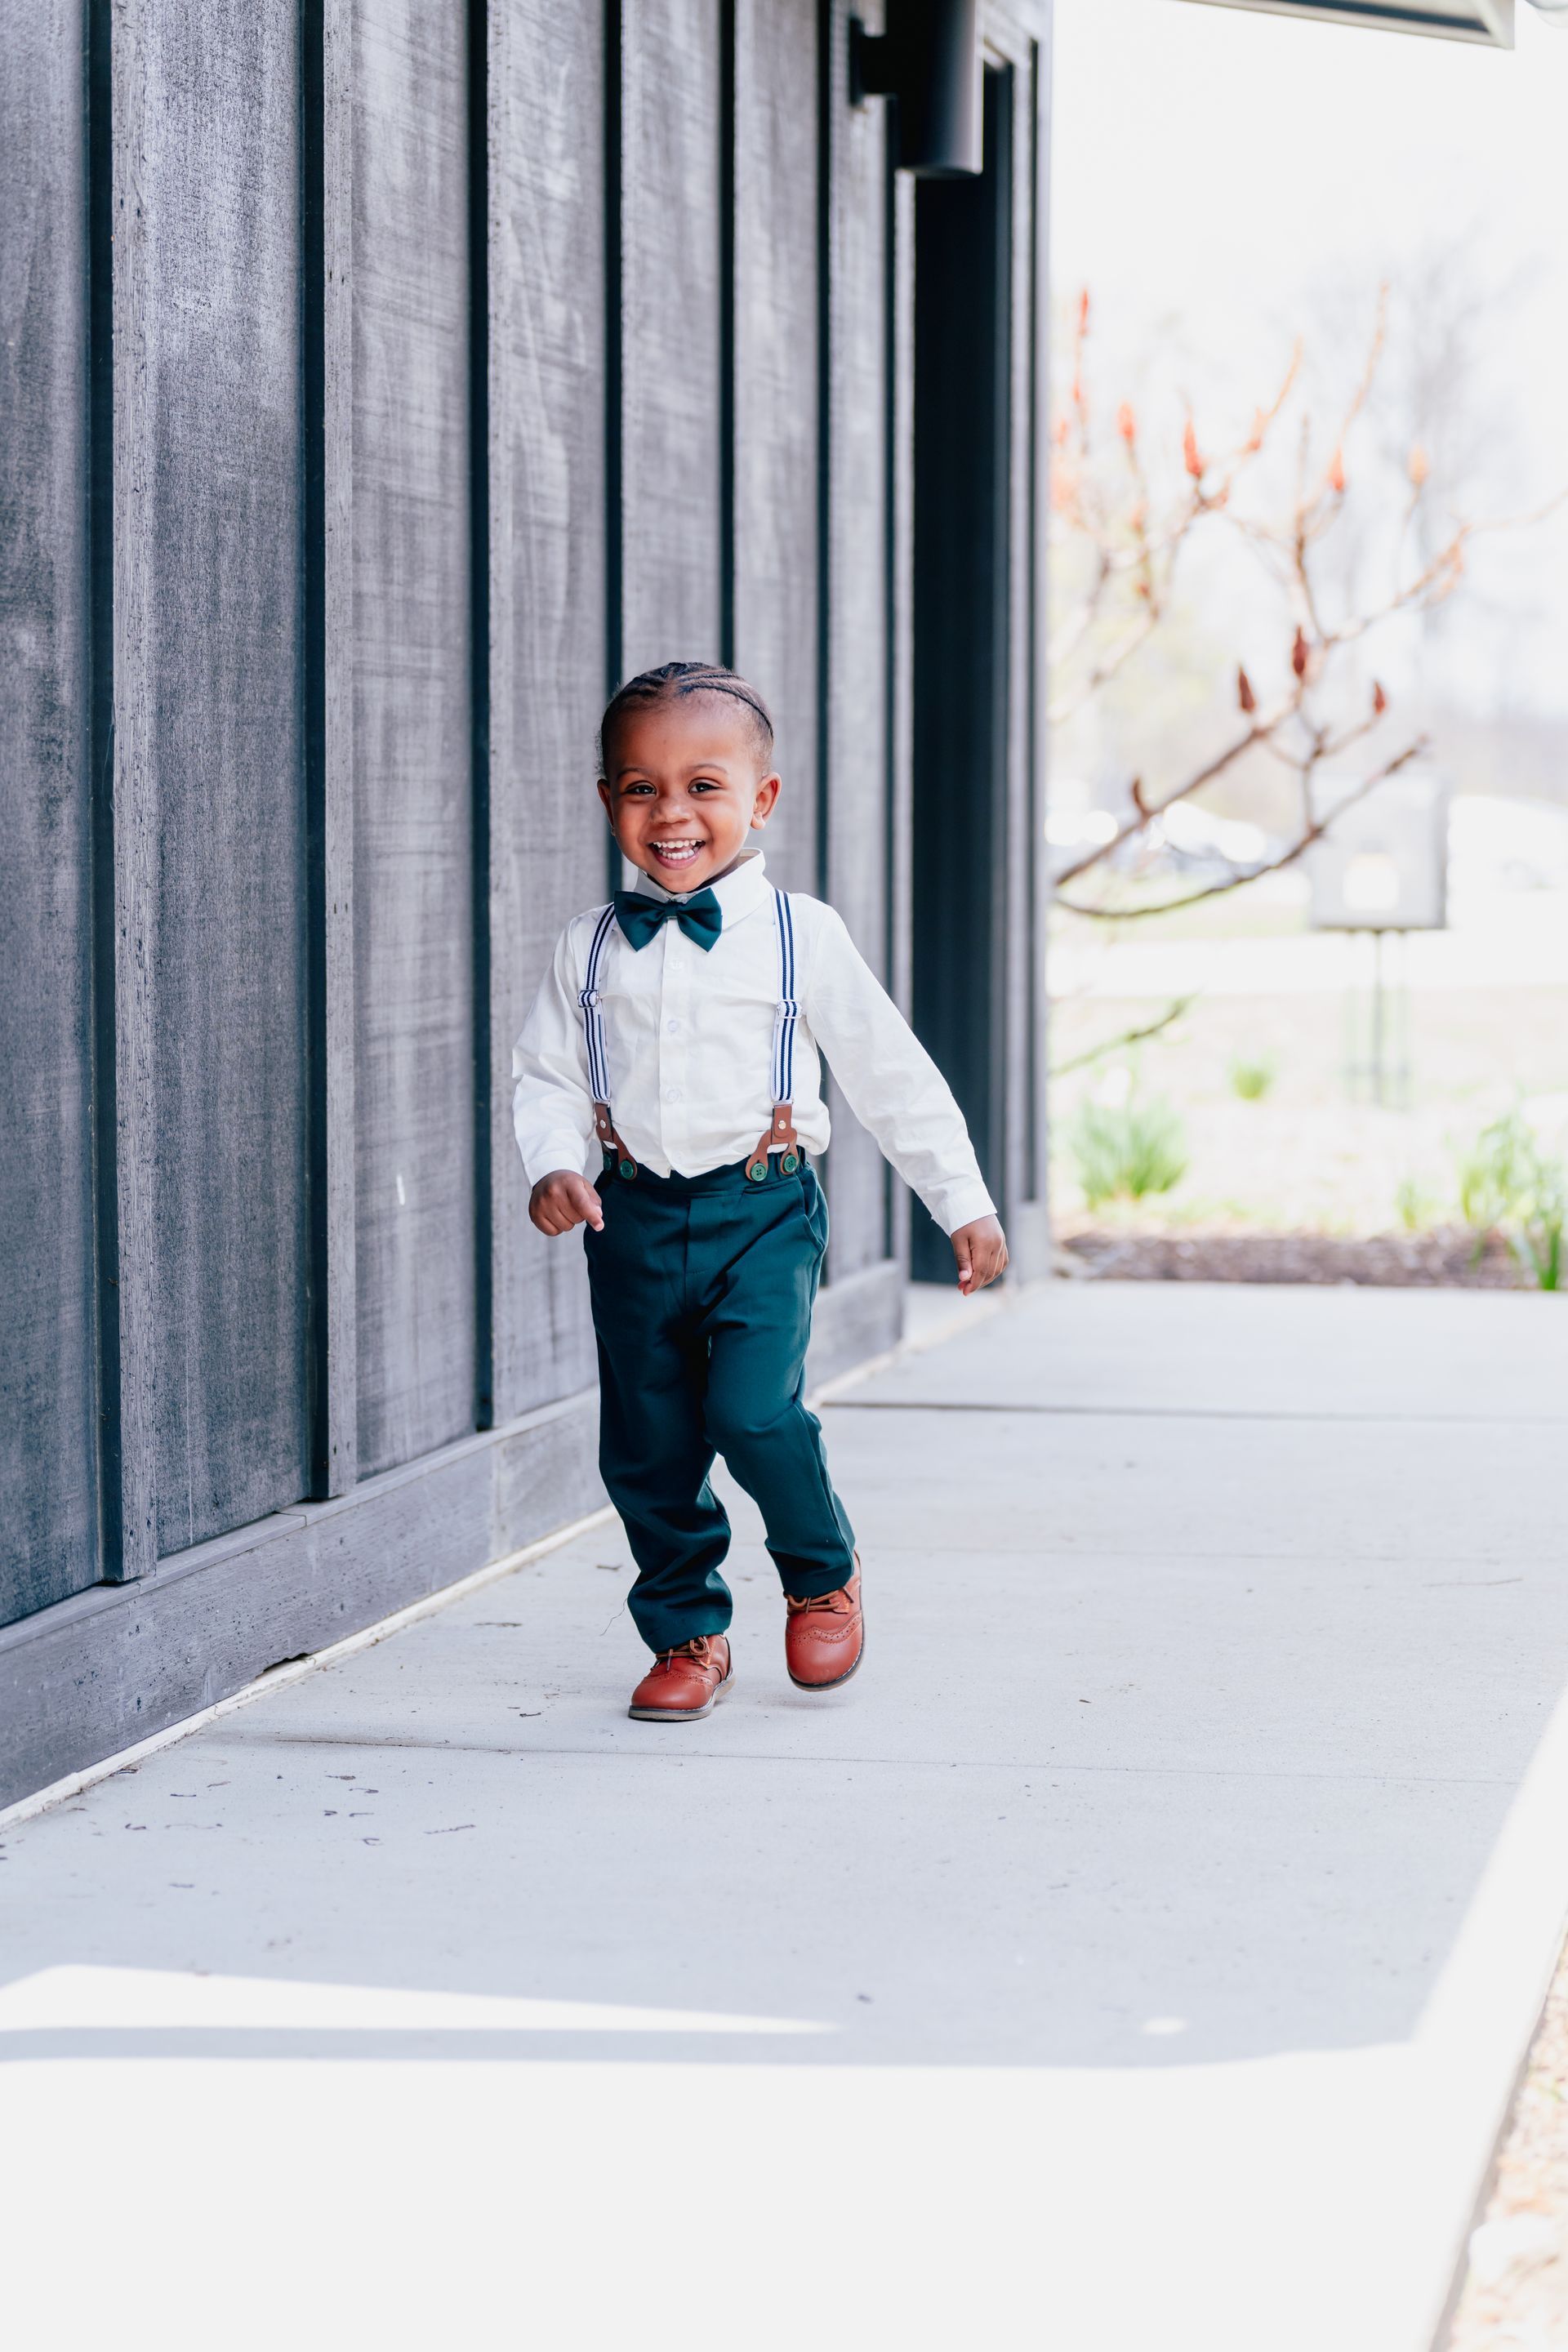 A little boy wearing suspenders and a bow tie is walking down a sidewalk.